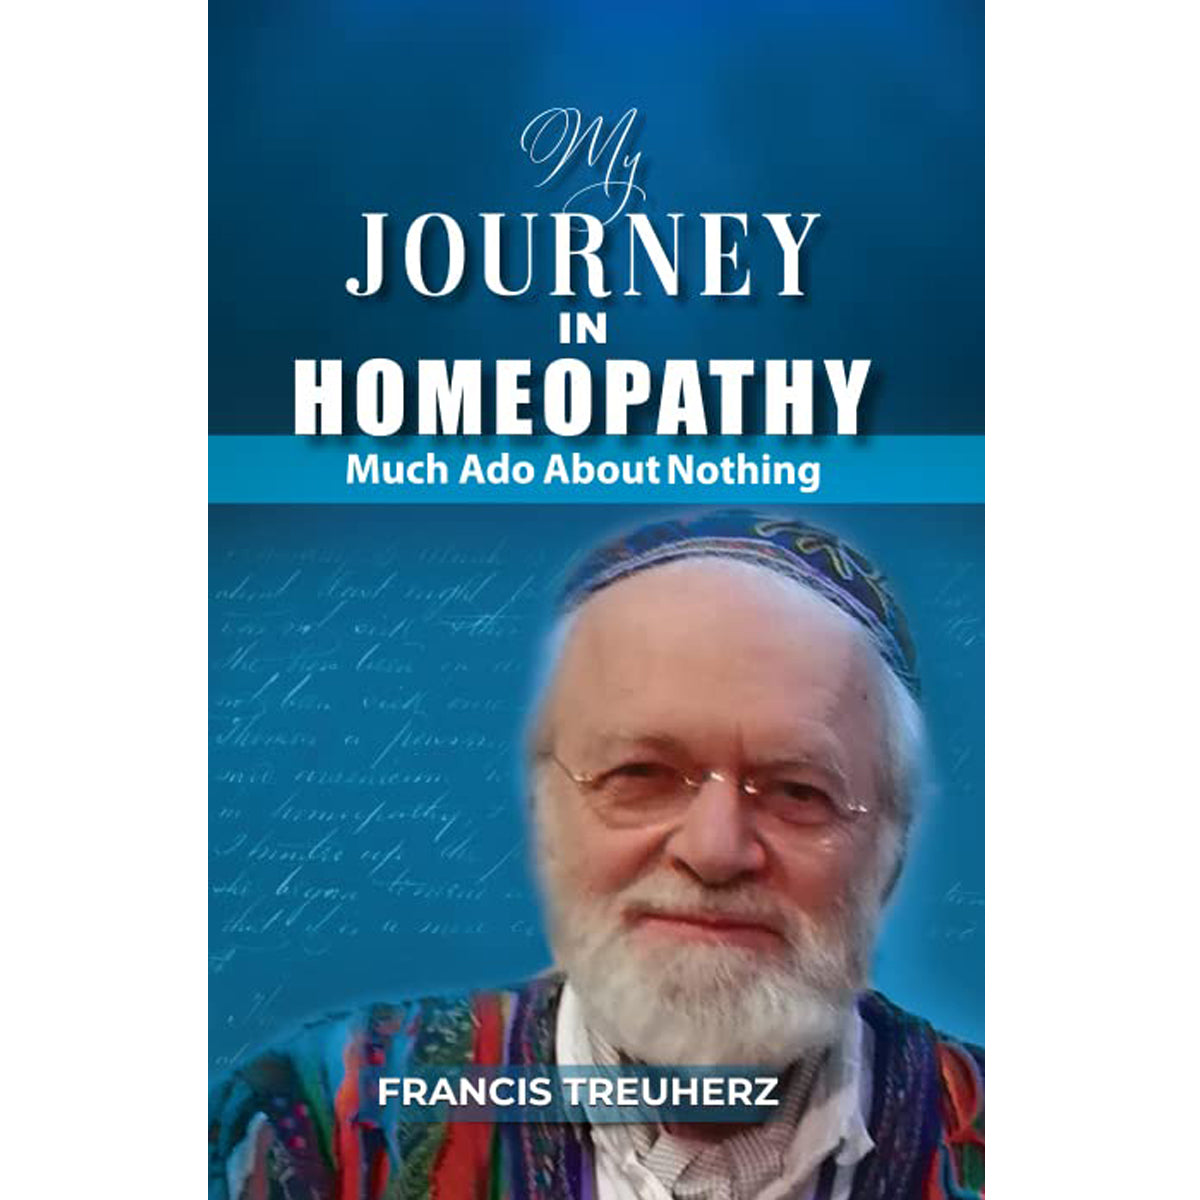 MY JOURNEY IN HOMEOPATHY – FRANCIS TREUHERZ